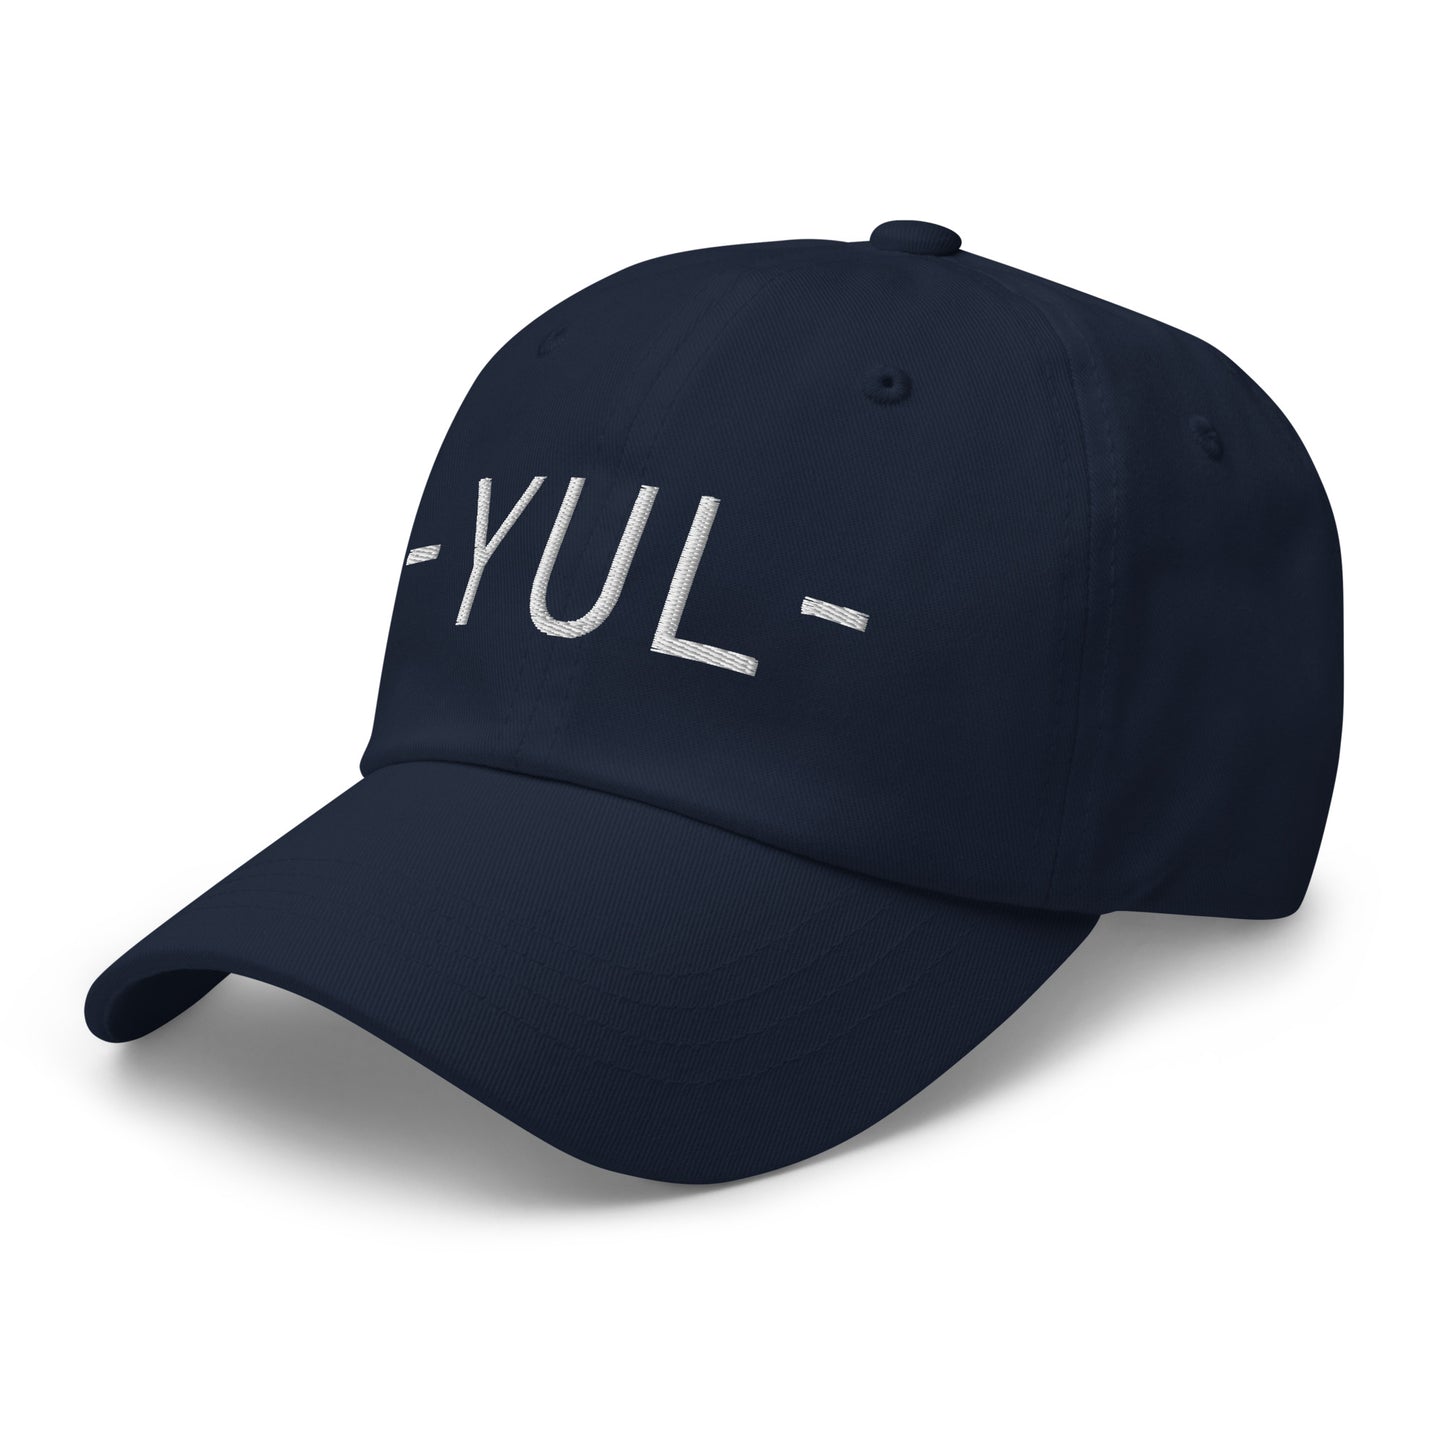 Souvenir Baseball Cap - White • YUL Montreal • YHM Designs - Image 15